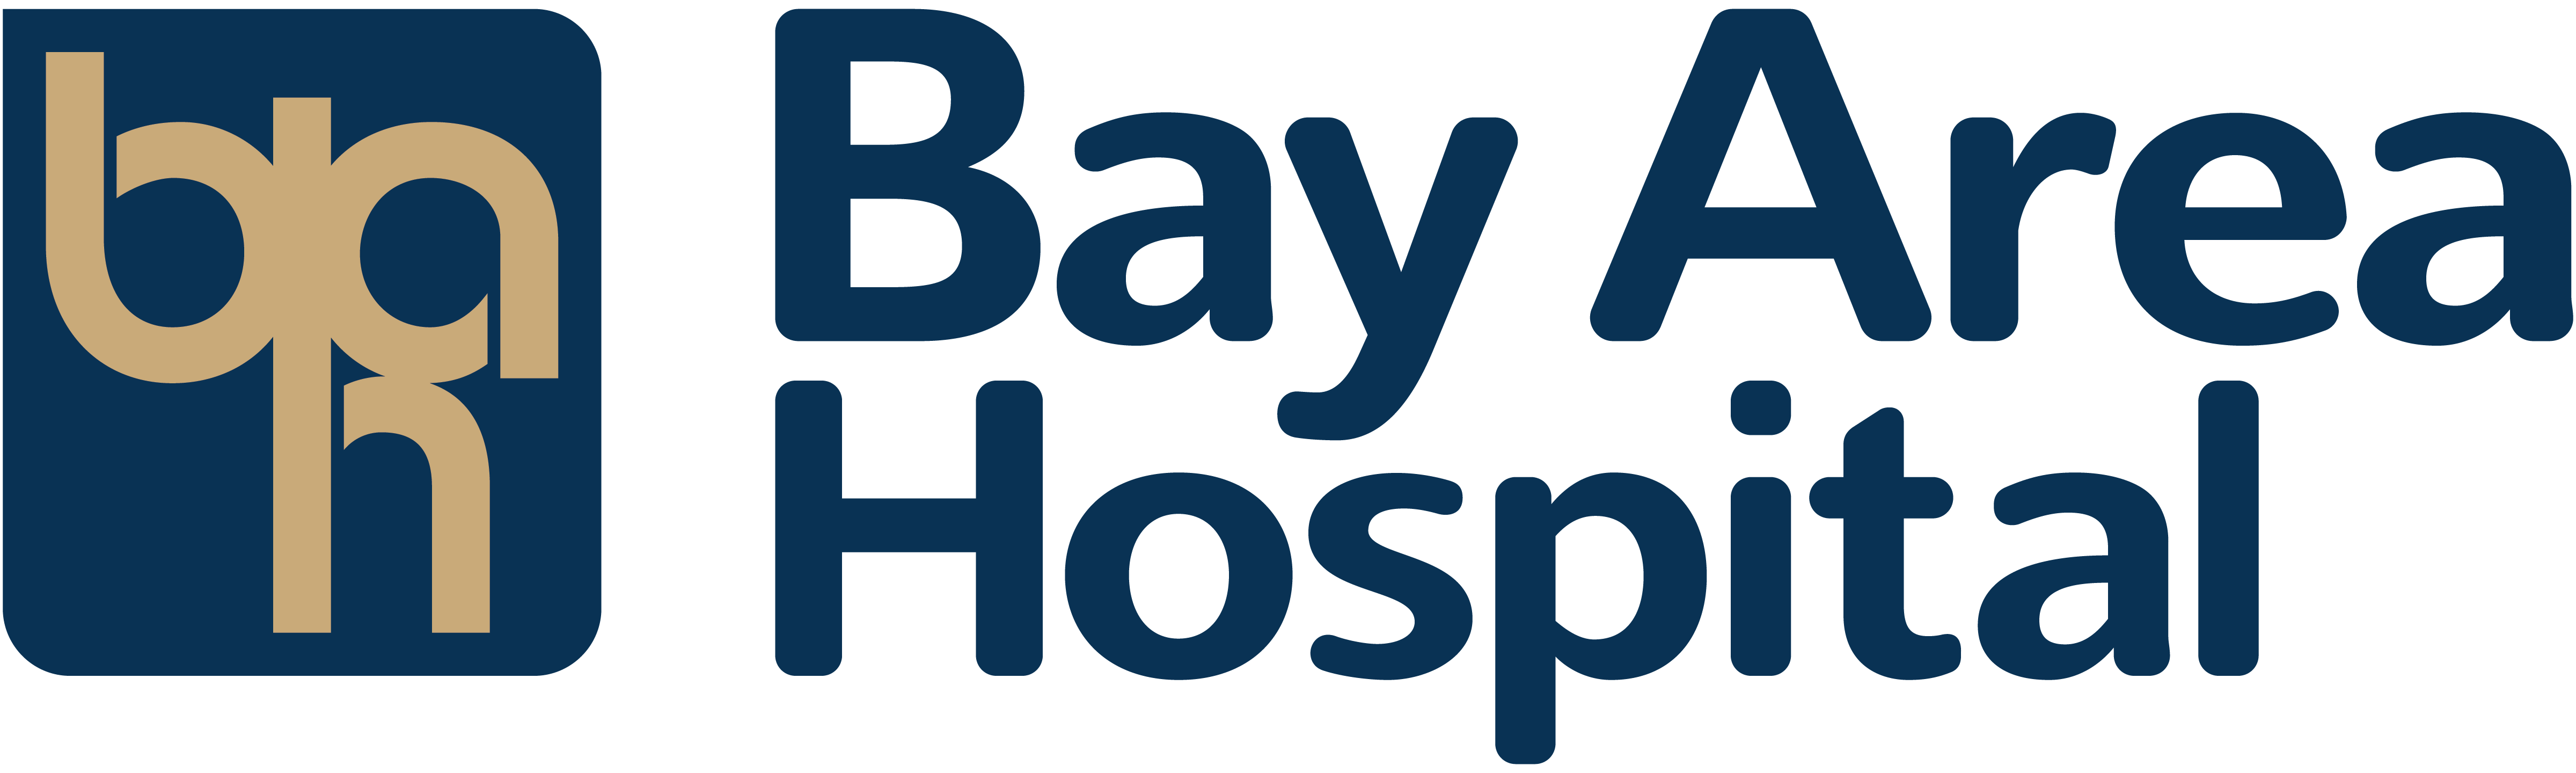 Bay Area Hospital logo.